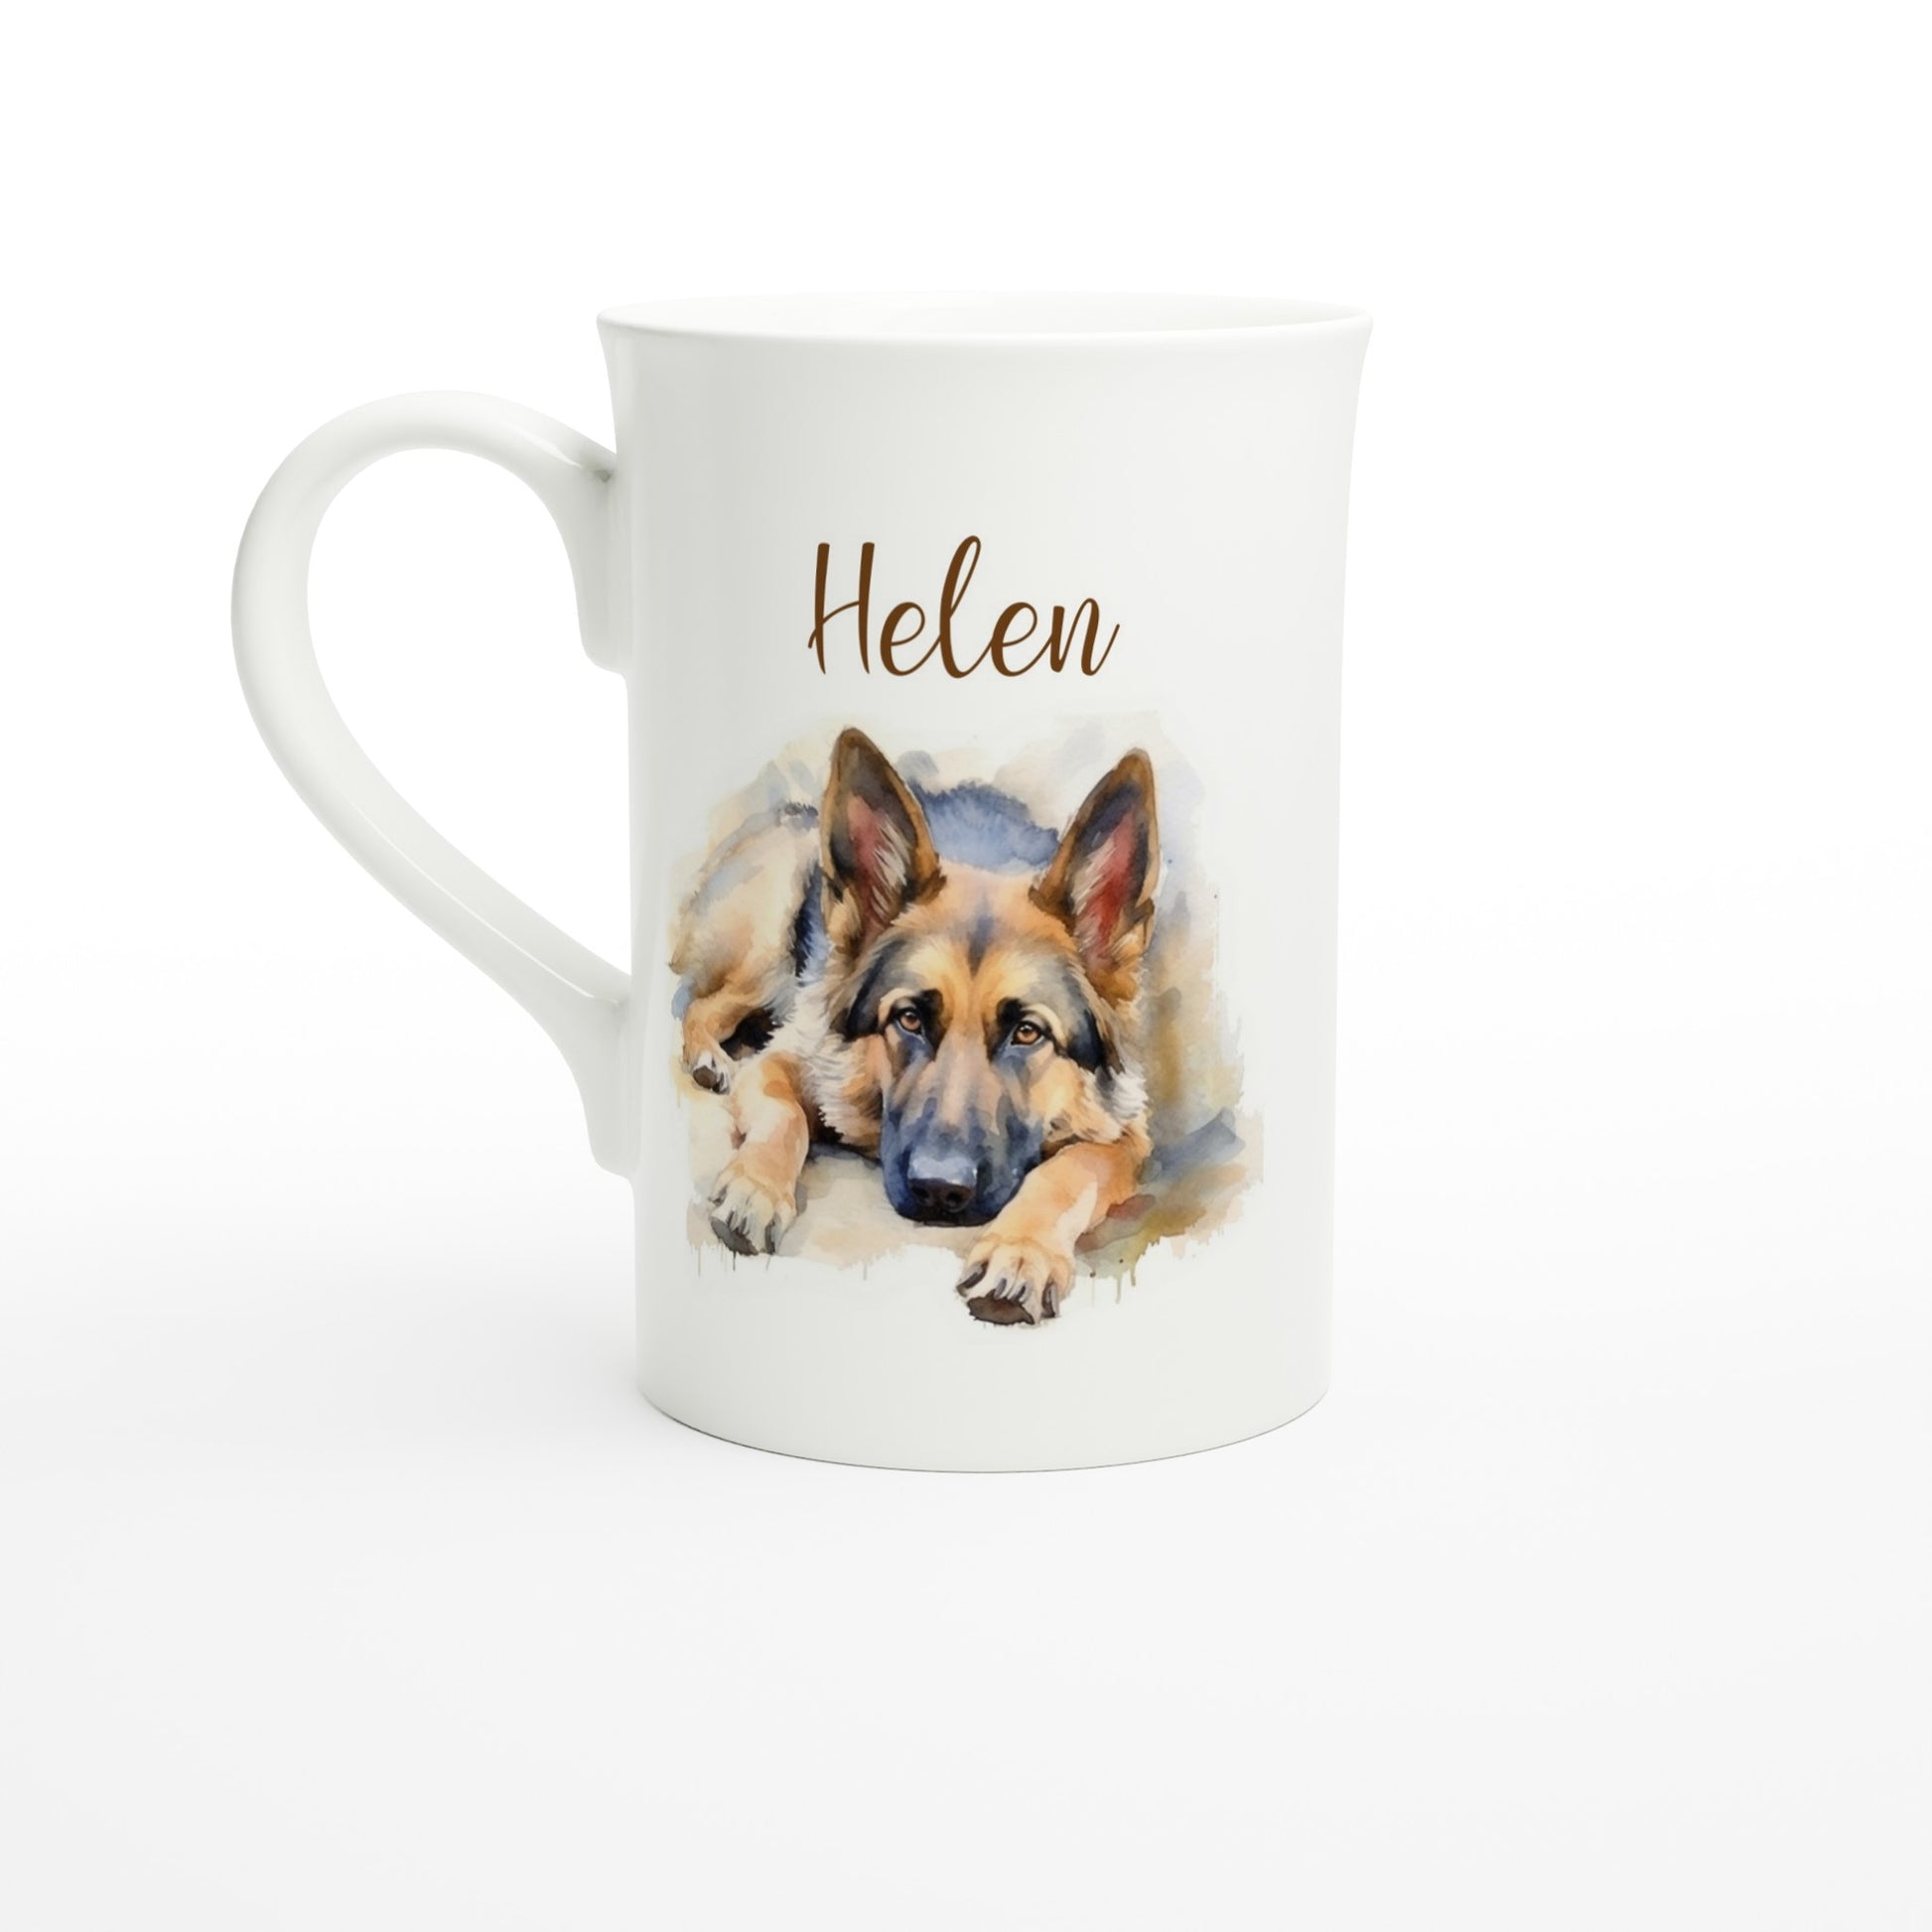 Personalised porcelain German shepherd mug